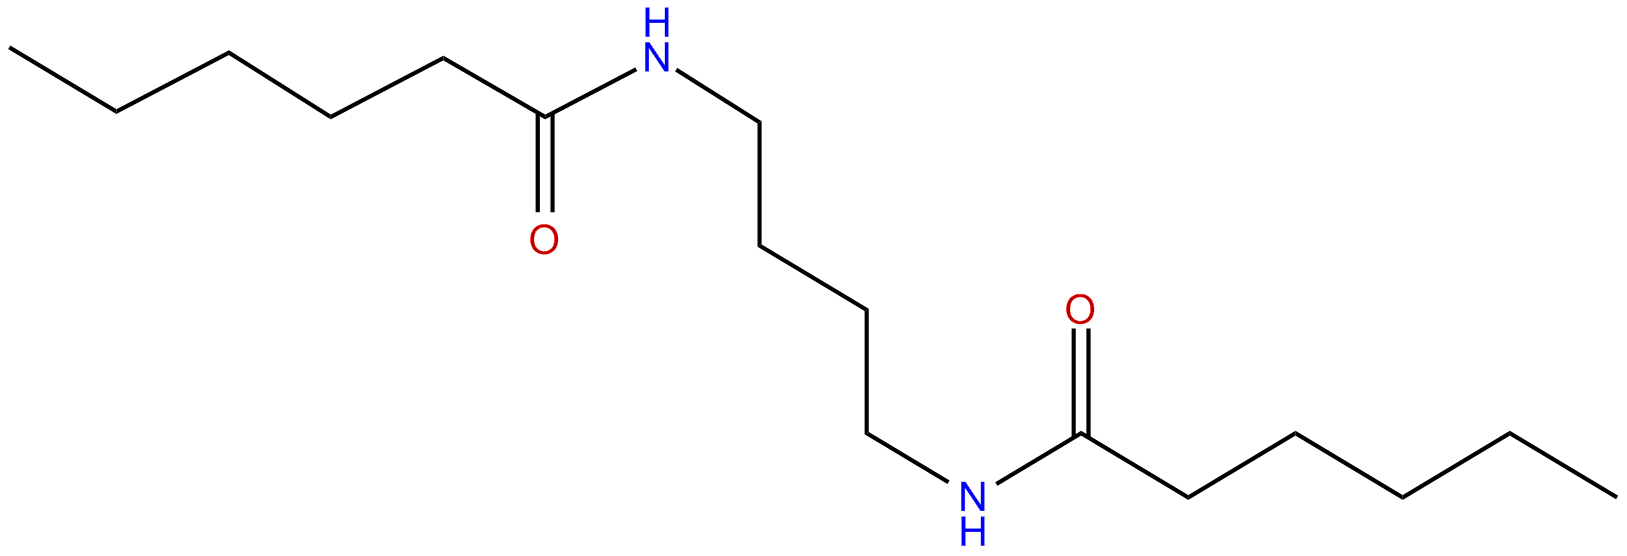 Image of 1,4-tetramethylene-bis(hexanamide)